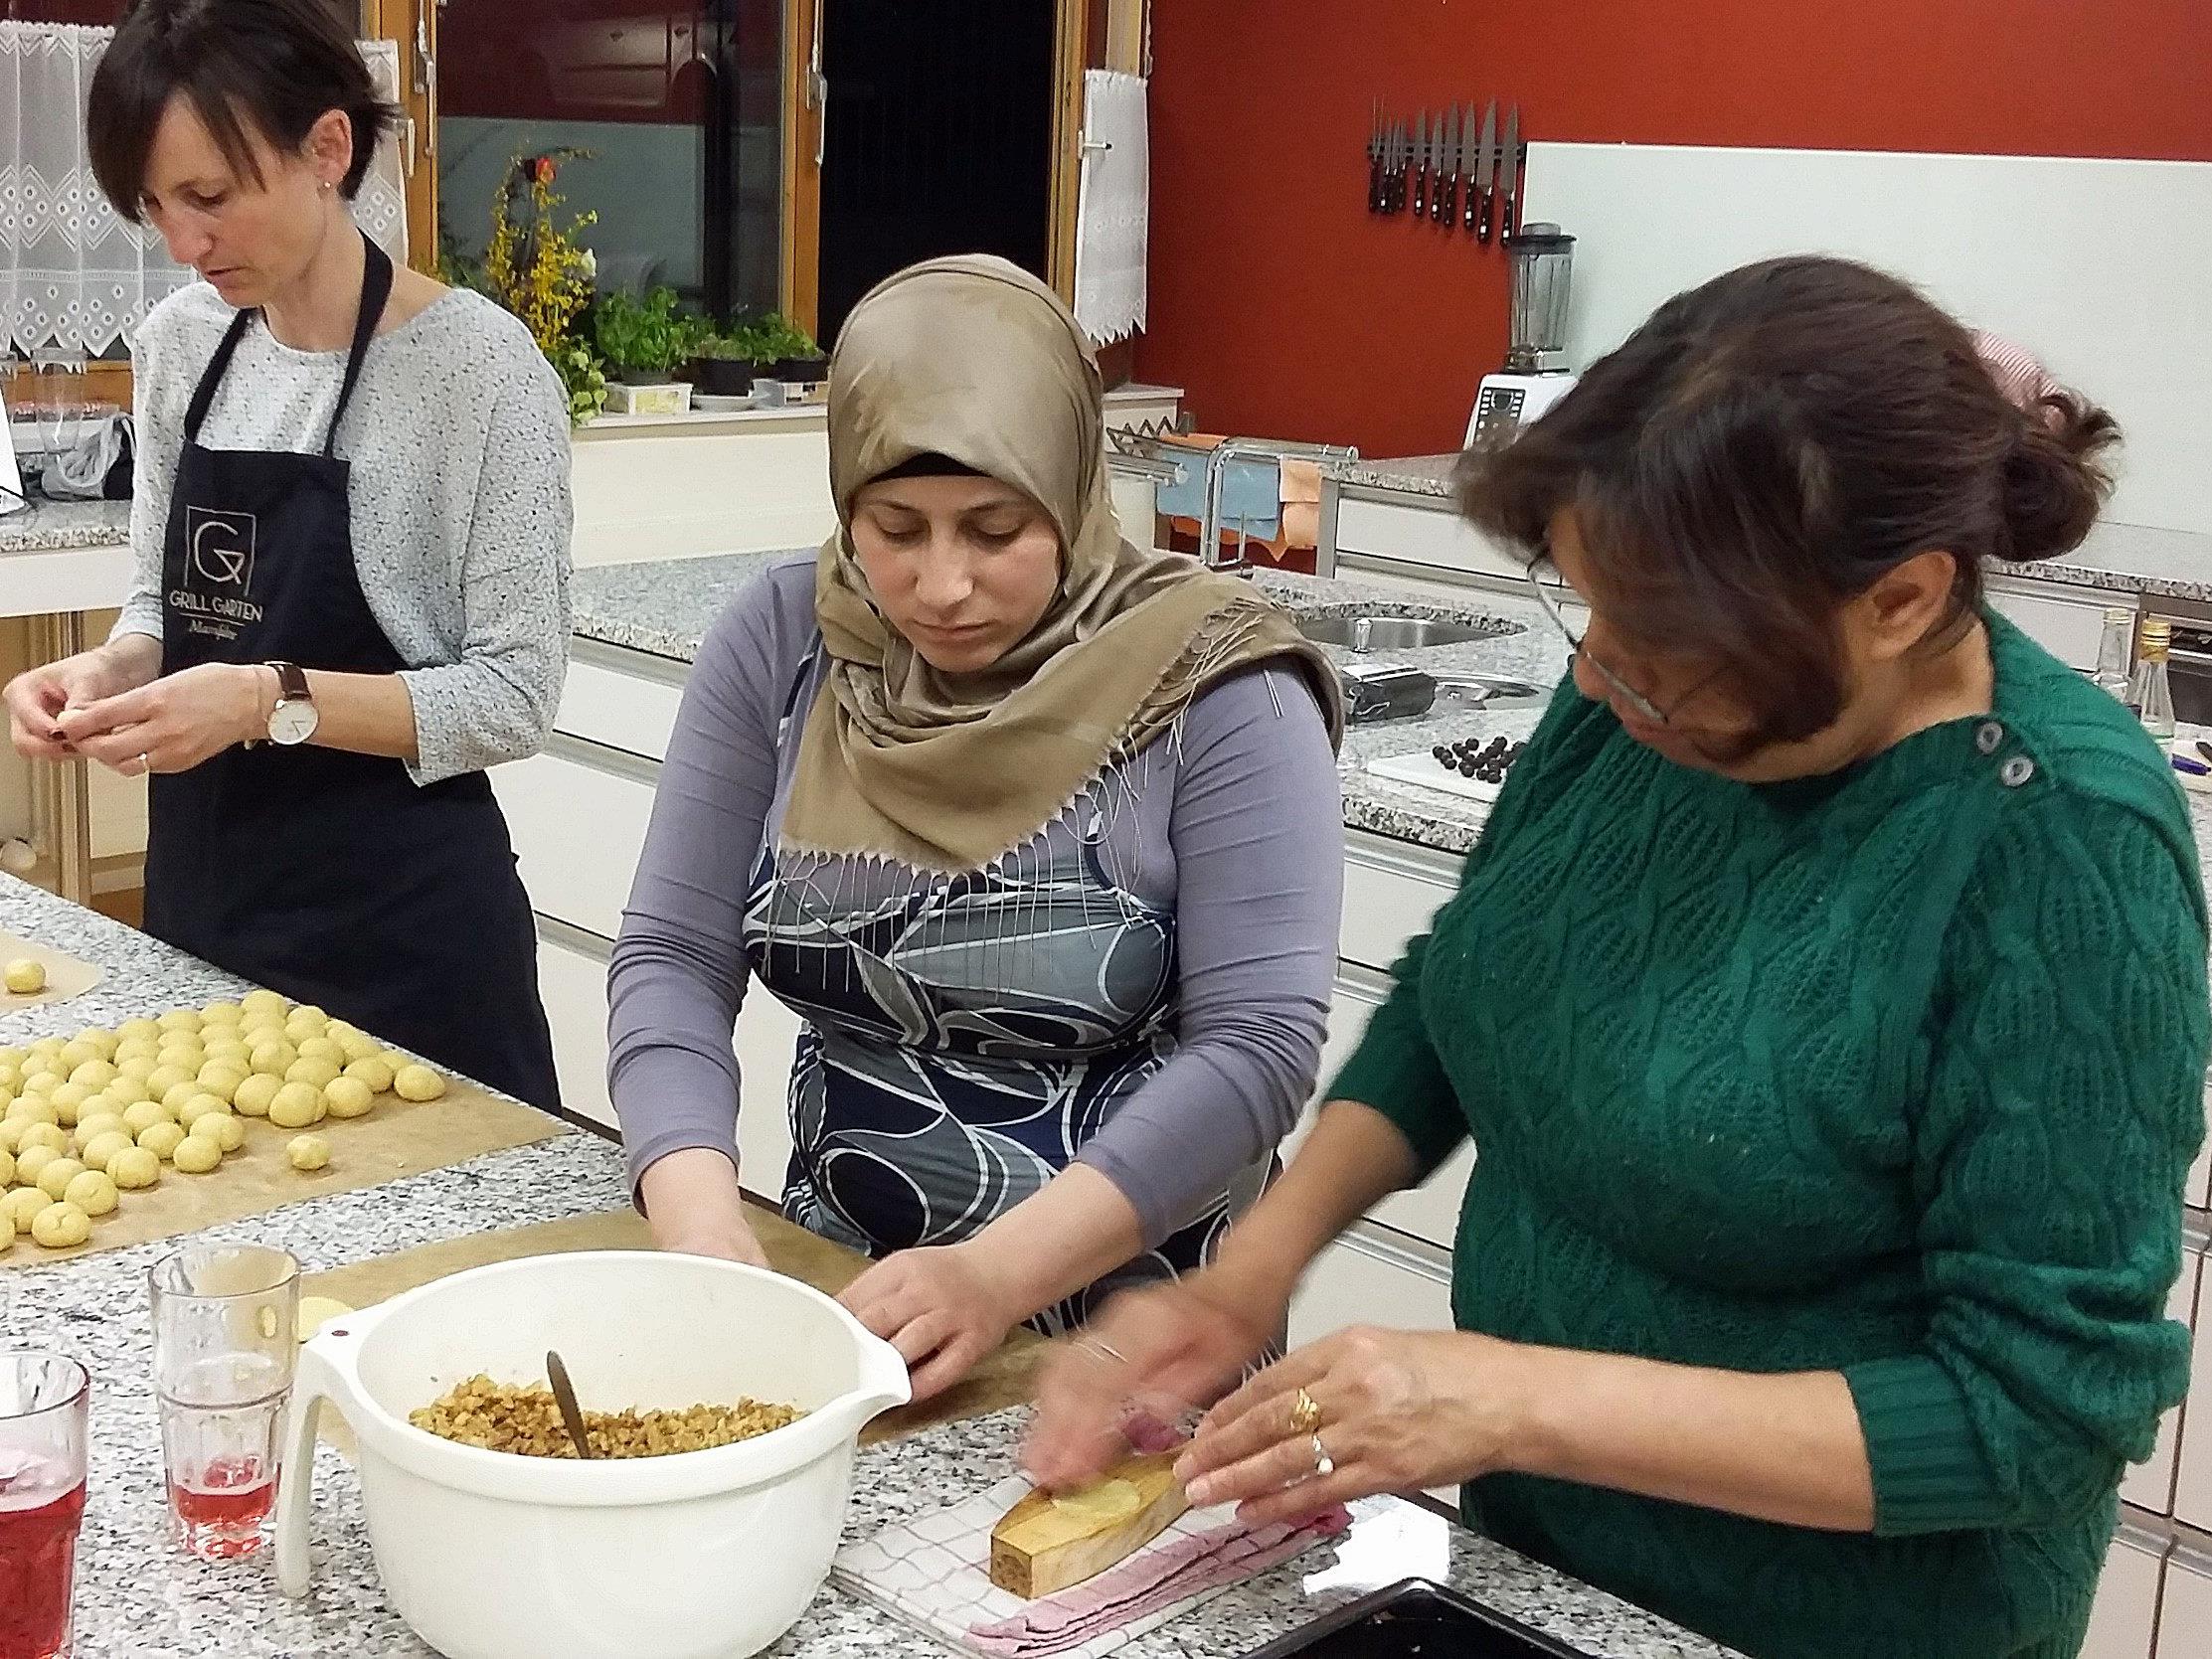 Beim gemeinsamen Backen lernen sich Einheimische und syrische Frauen besser kennen.